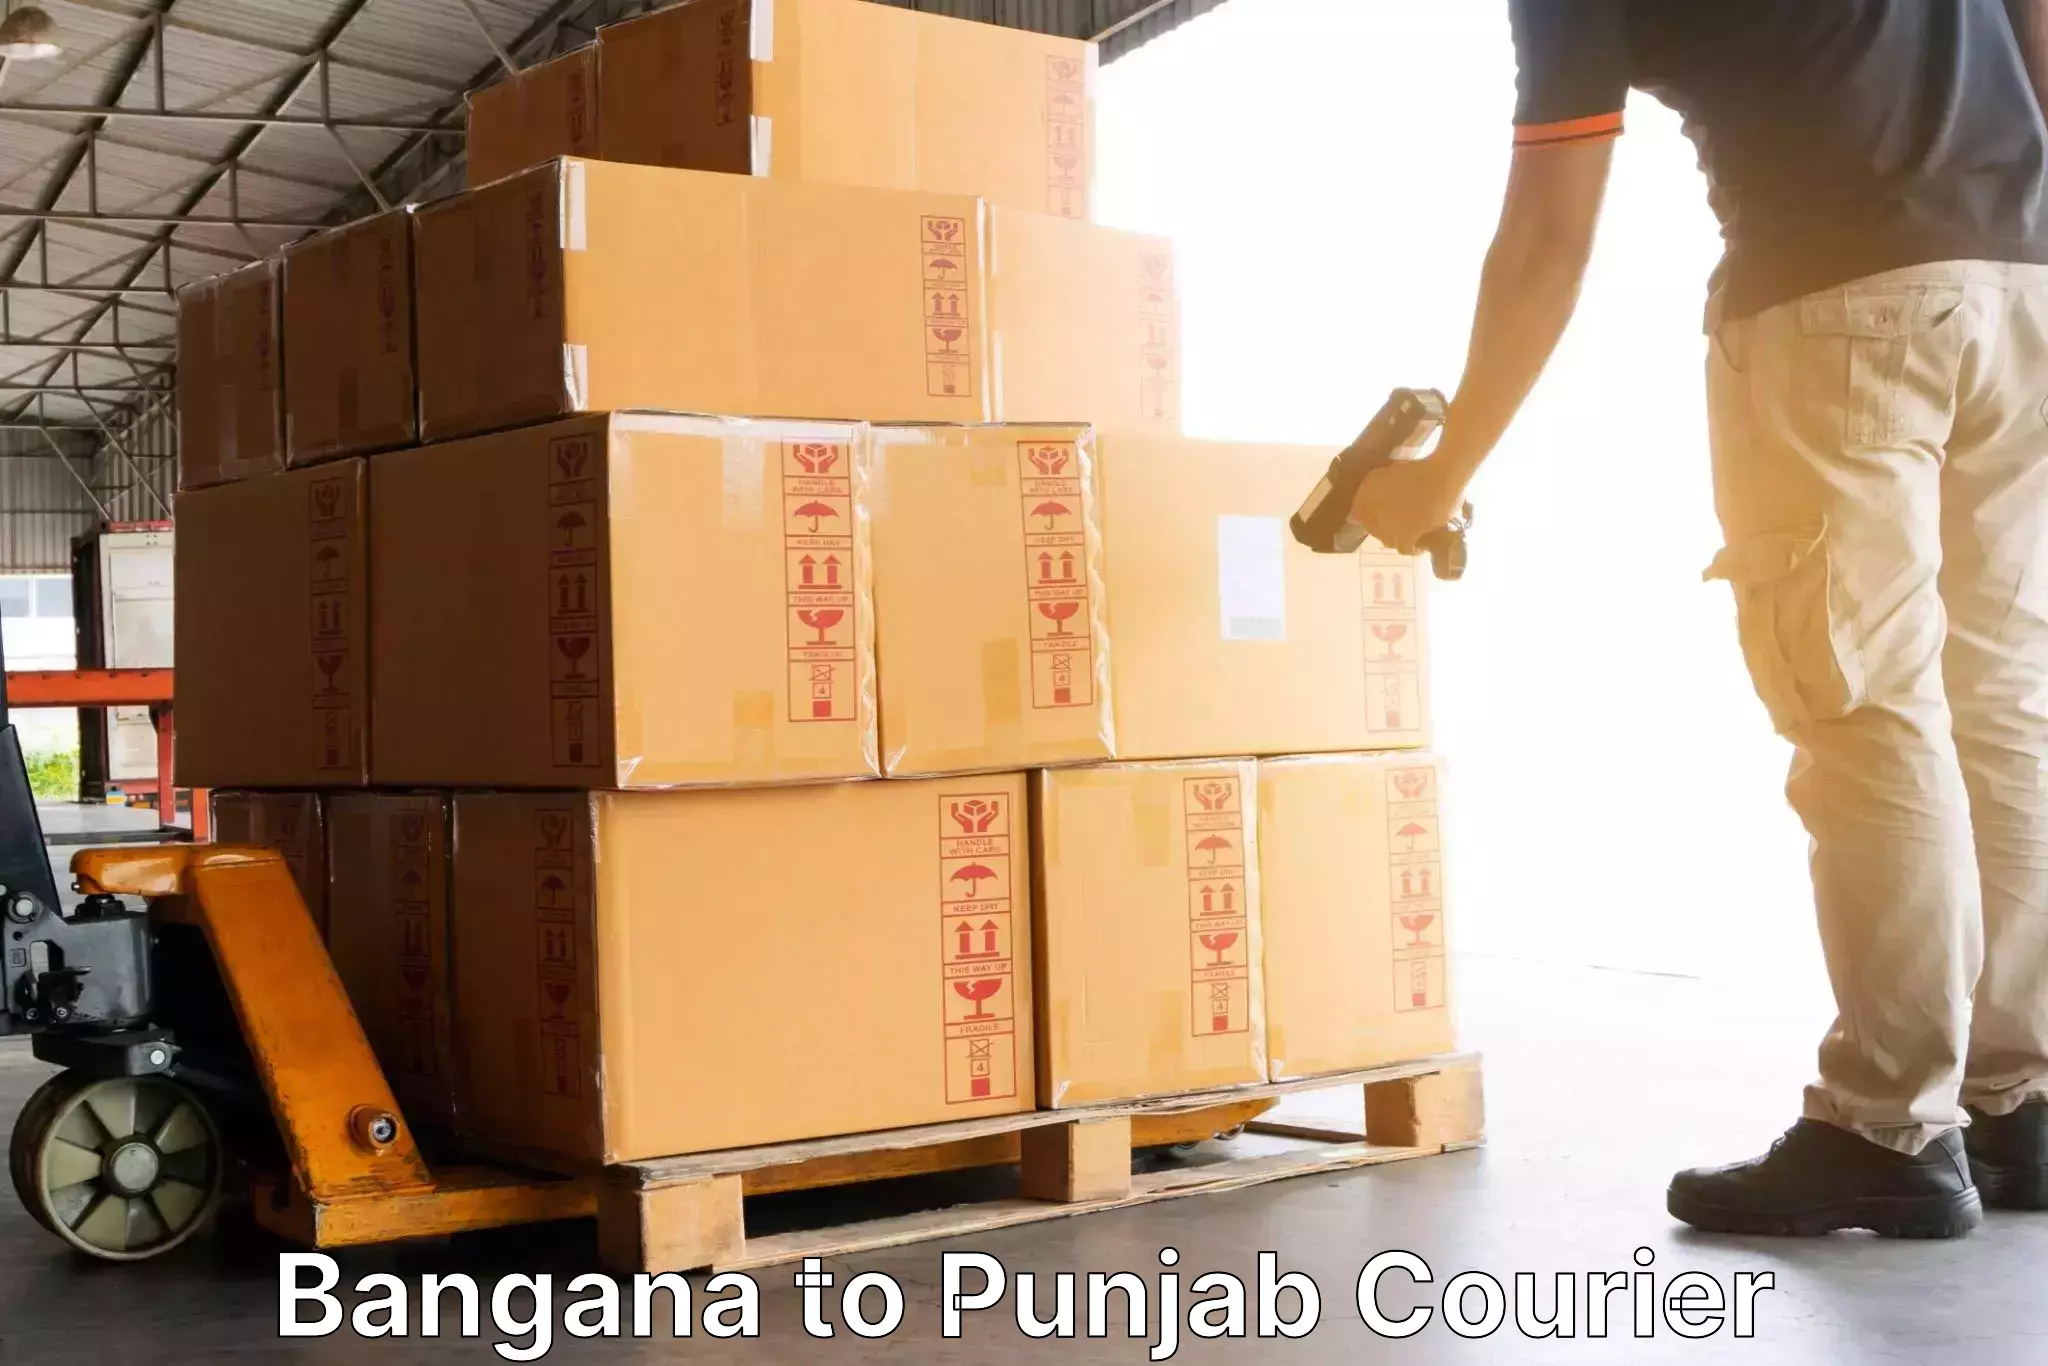 Business shipping needs Bangana to Central University of Punjab Bathinda